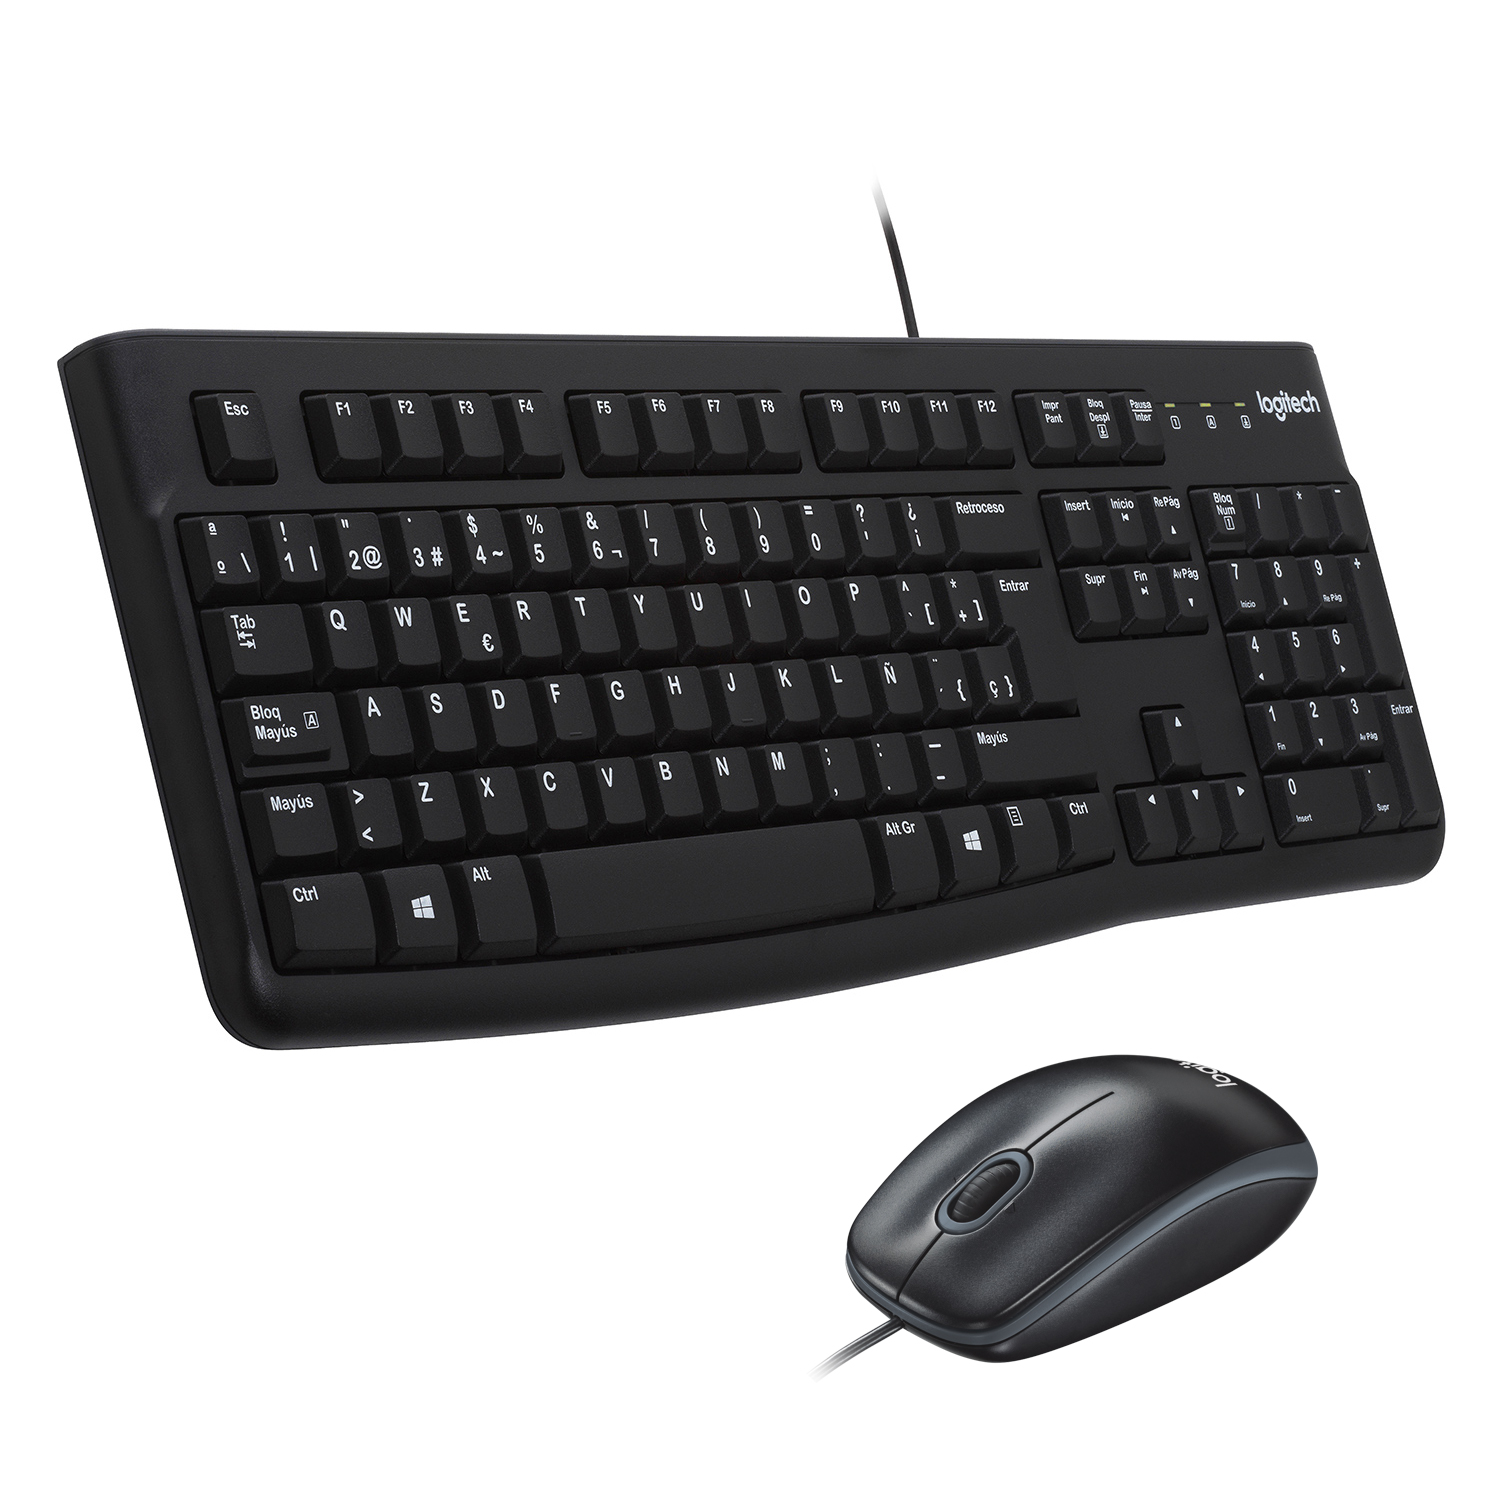 Клавиатура + мышь Logitech Desktop MK120, USB, черный (920-002589) Английская раскладка!!!